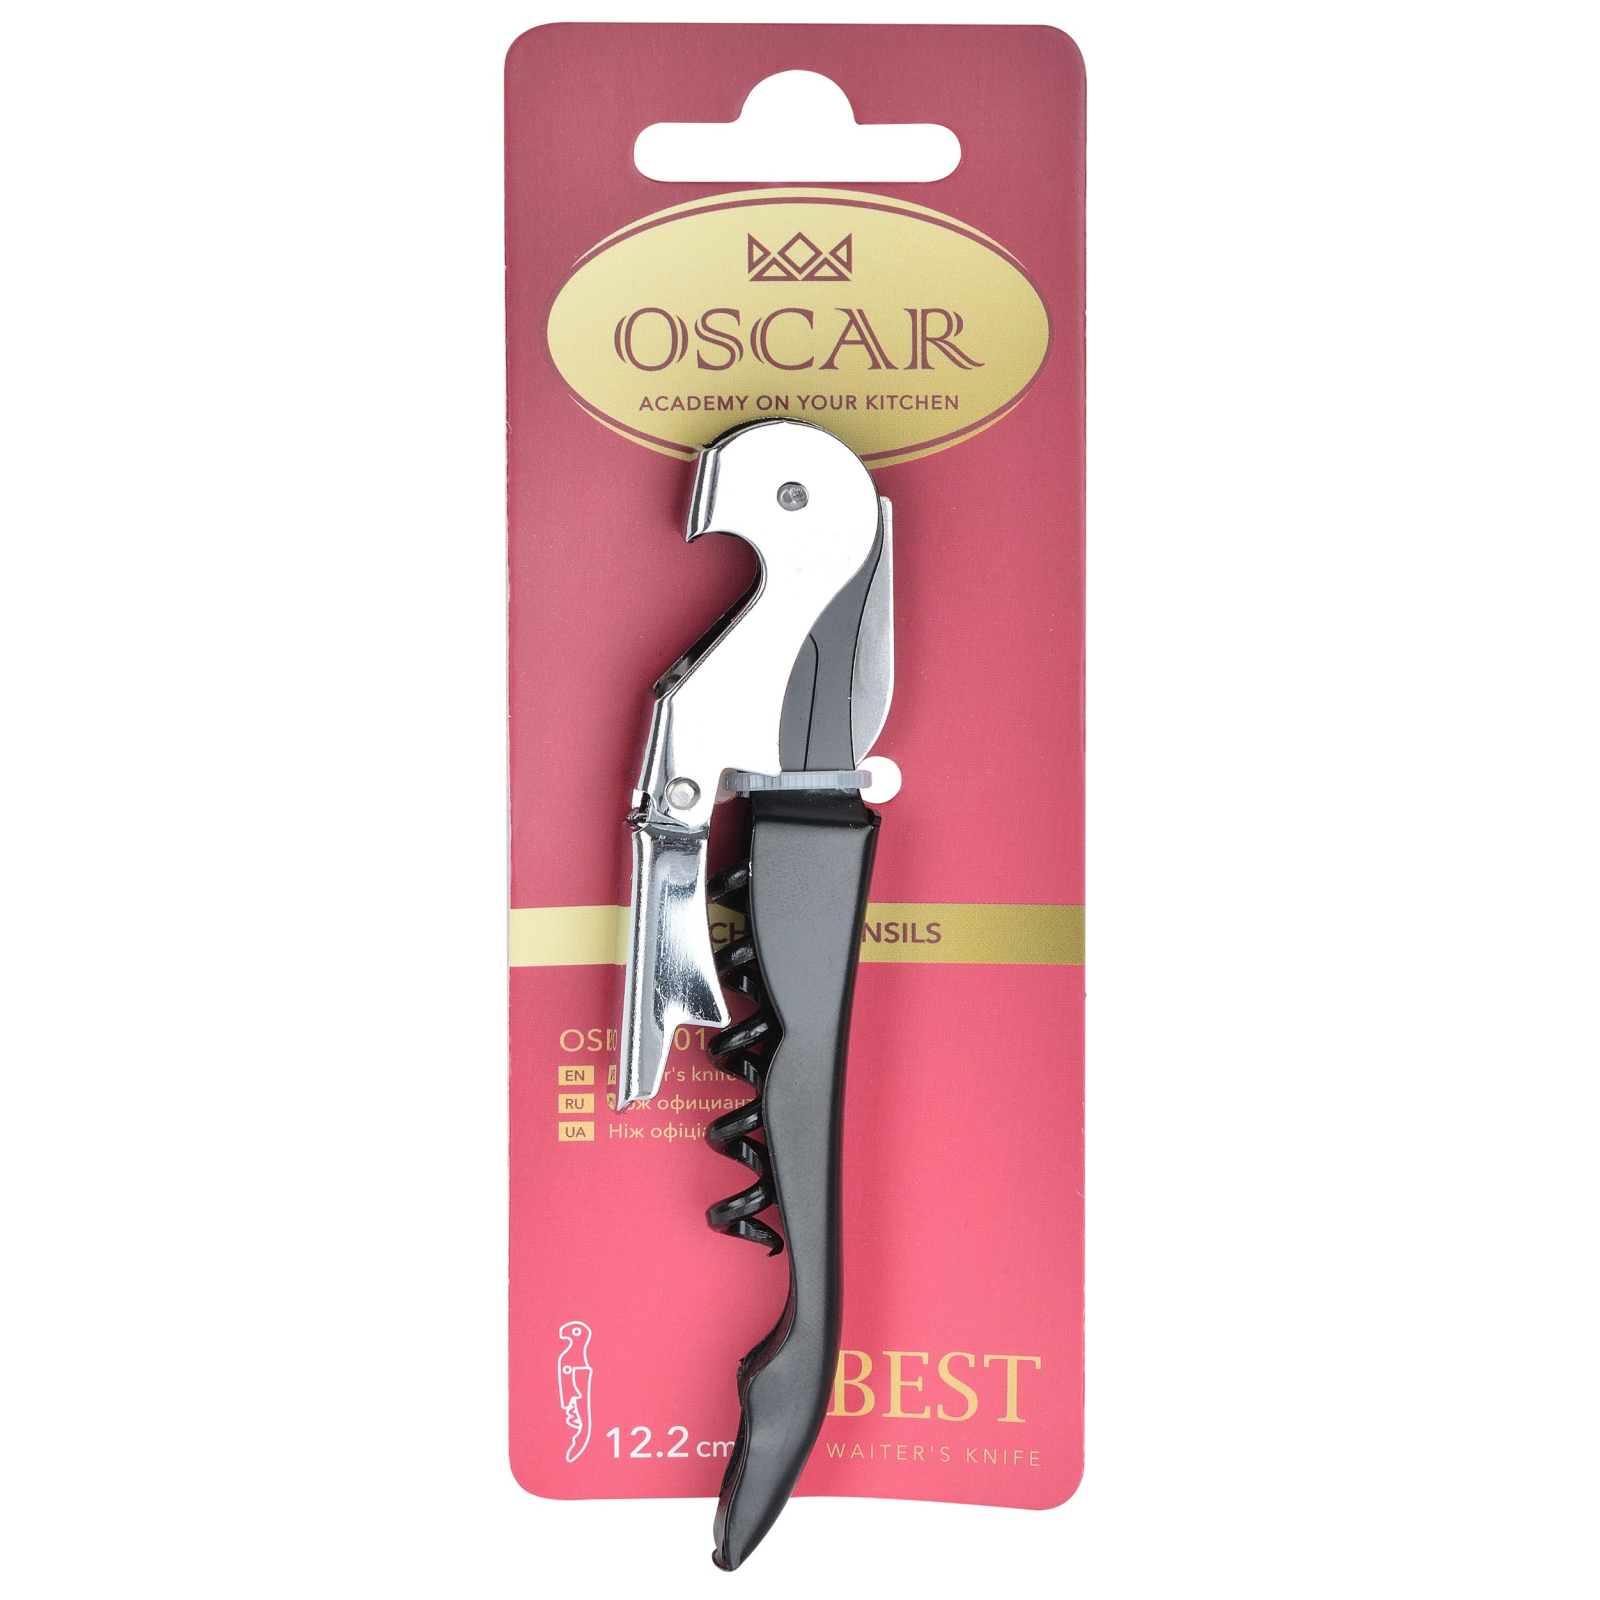 Штопор Oscar Best Waiter's Knife (OSR-5101) изображение 3